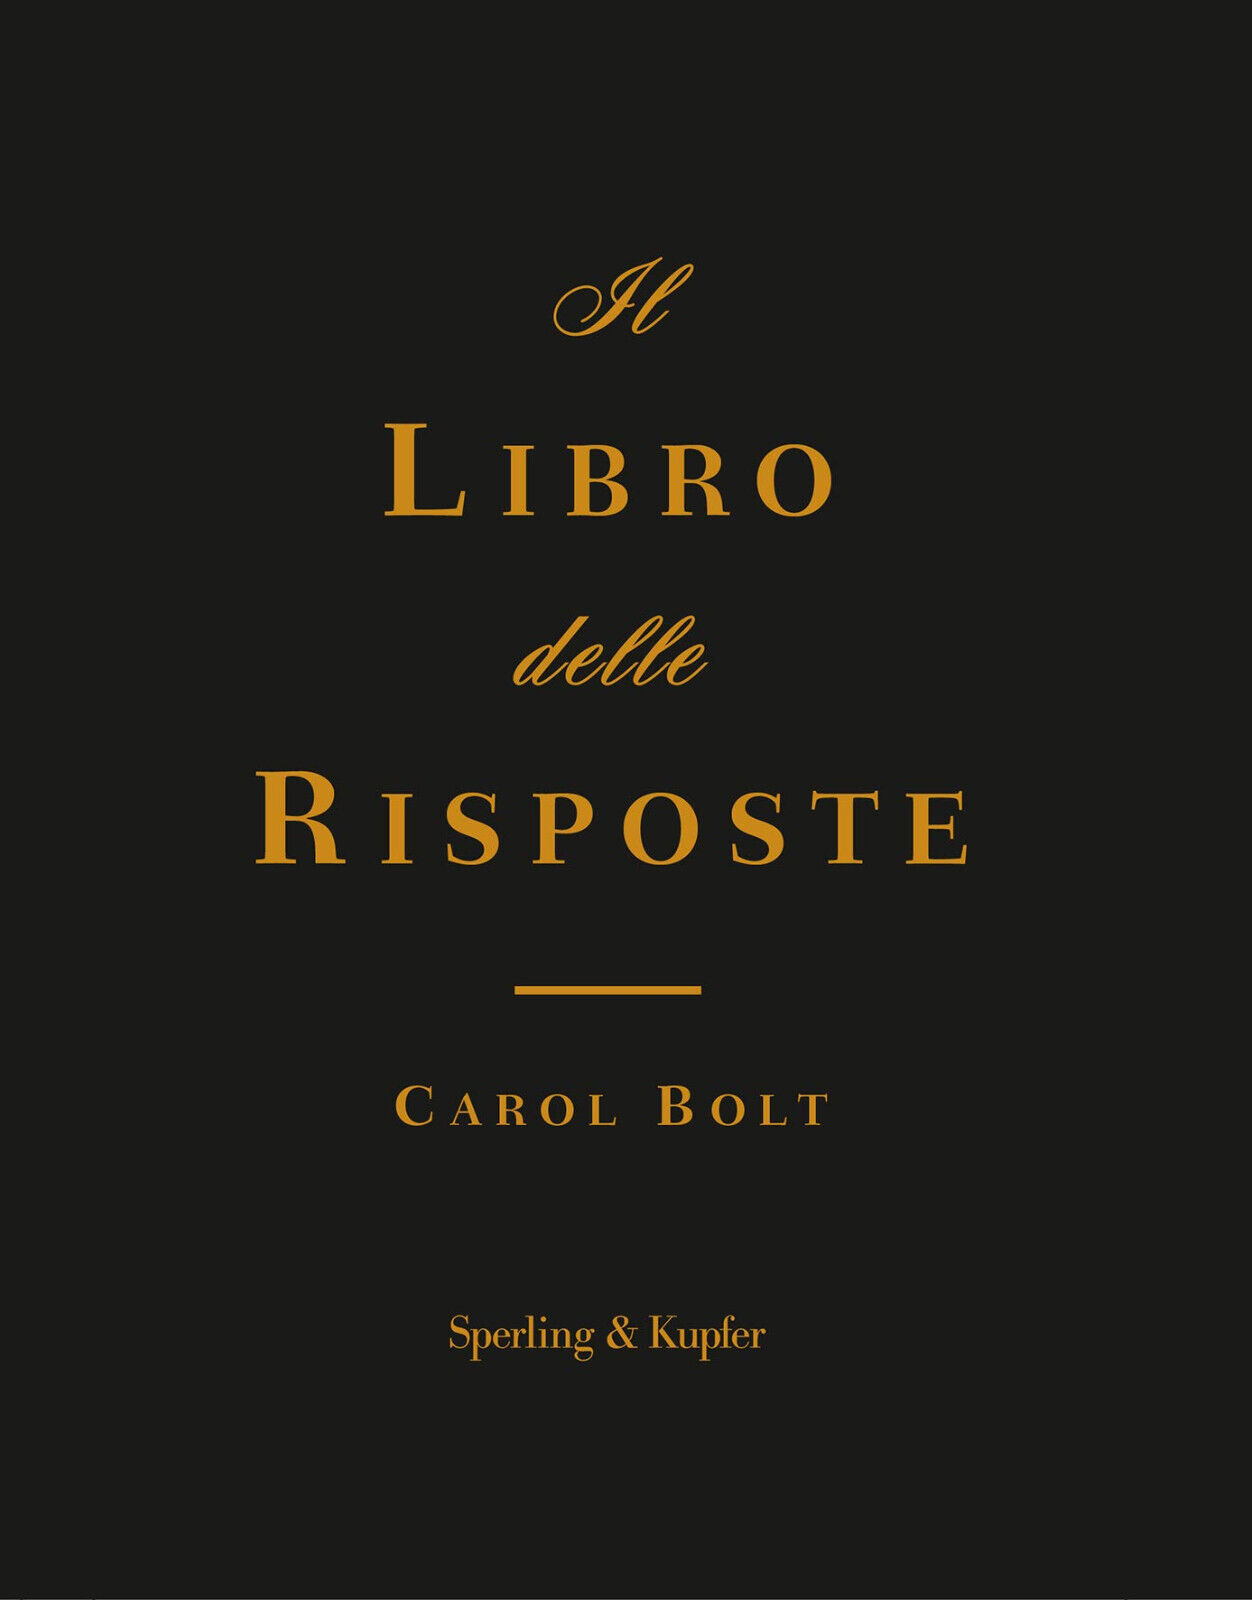 Il libro delle risposte - Carol Bolt - Sperling & Kupfer, 2019